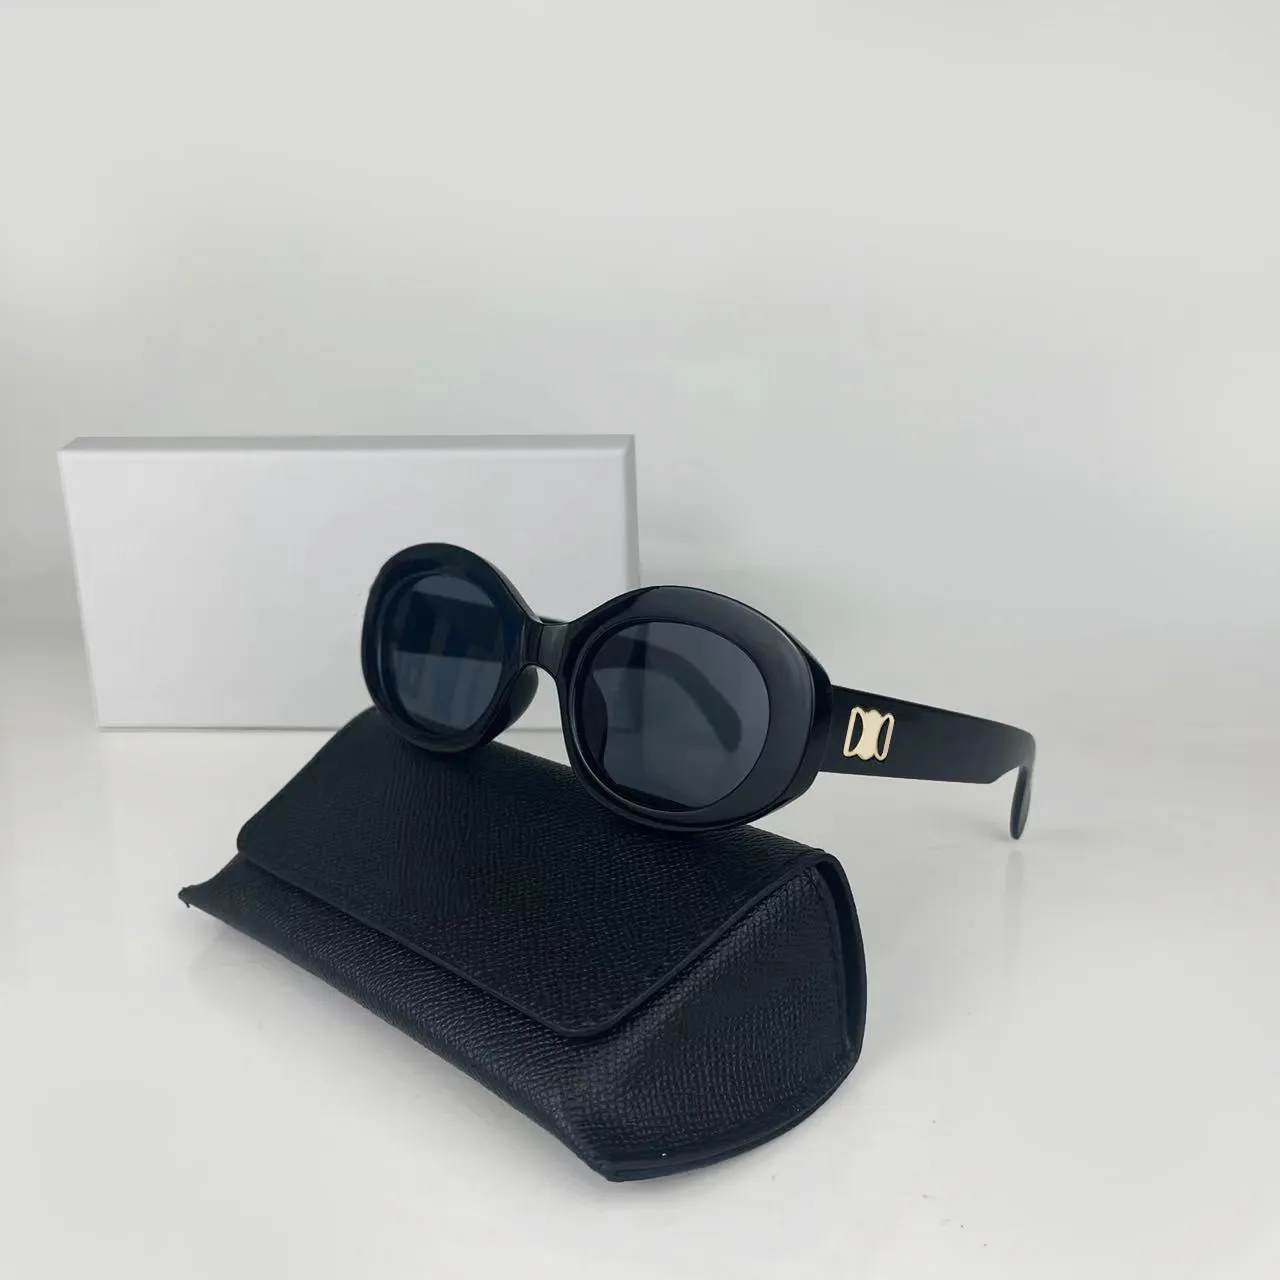 النظارات الشمسية الفاخرة المصممة النظارات الشمسية للرجال النظارات الشمسية الكلاسيكية النظارات الشمسية UV 400 للشاطئ مع مجموعة متنوعة من الأساليب والألوان